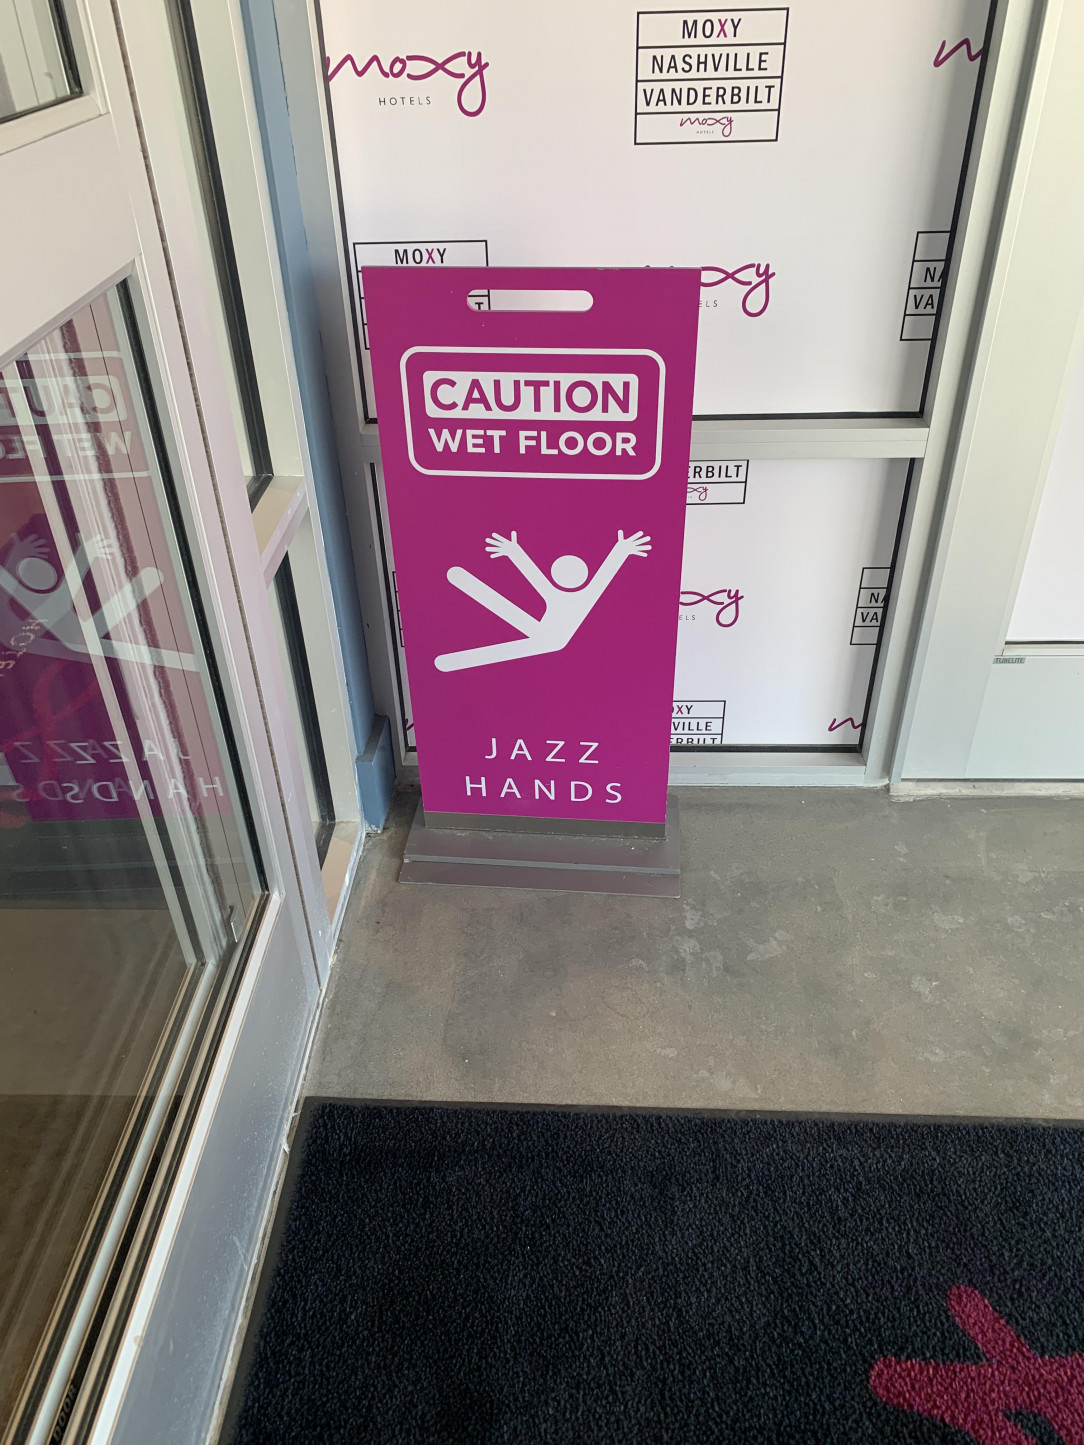 Jazz hands